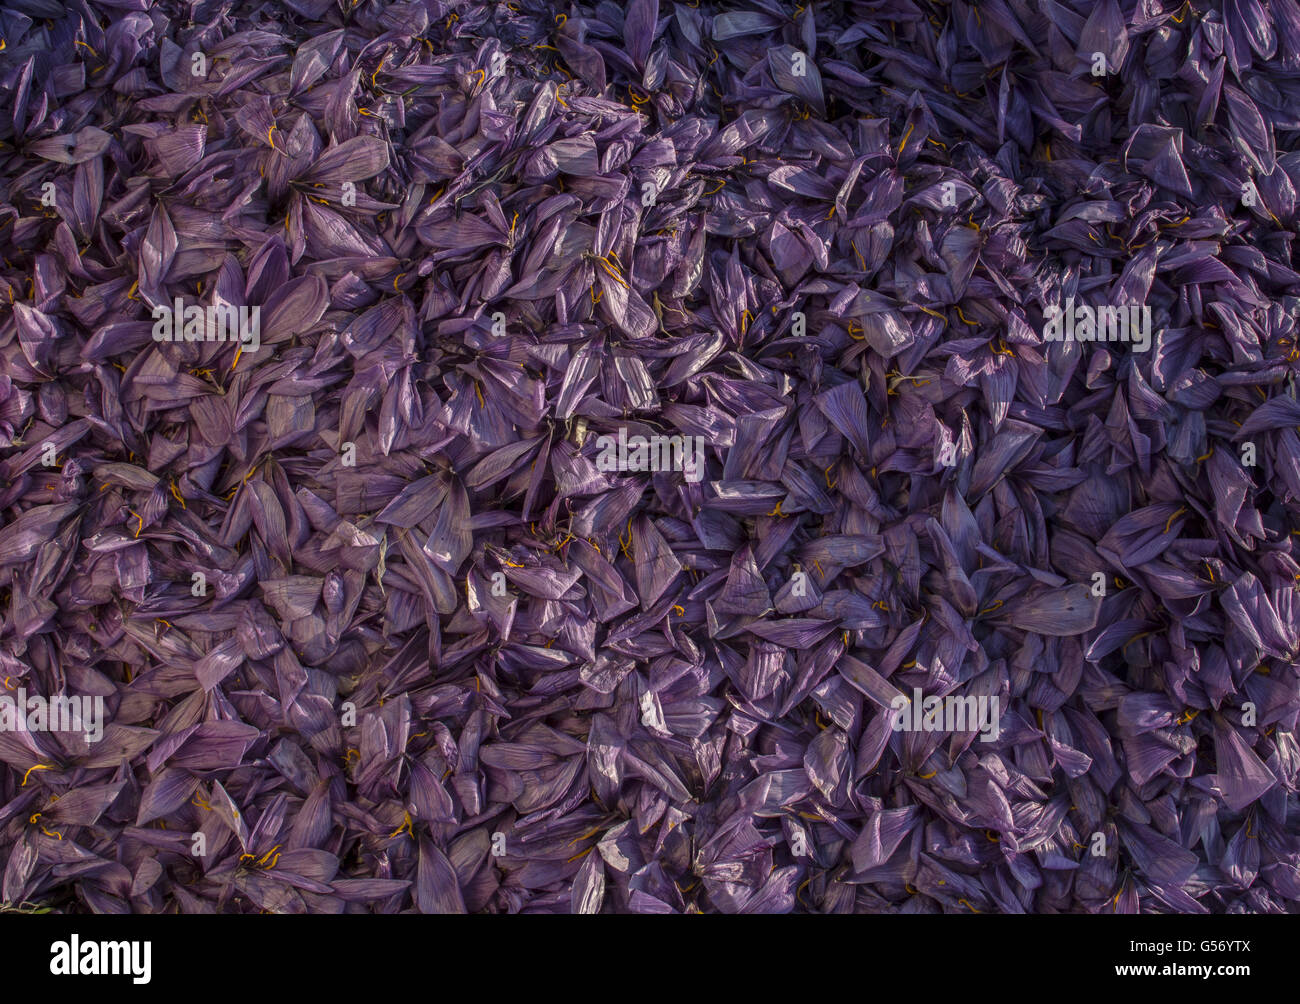 Crocus safran (Crocus sativus) tas de pétales jetés, au cours de la production de safran dans la saison des récoltes, près de Kozani, en Macédoine, Grèce, octobre Banque D'Images